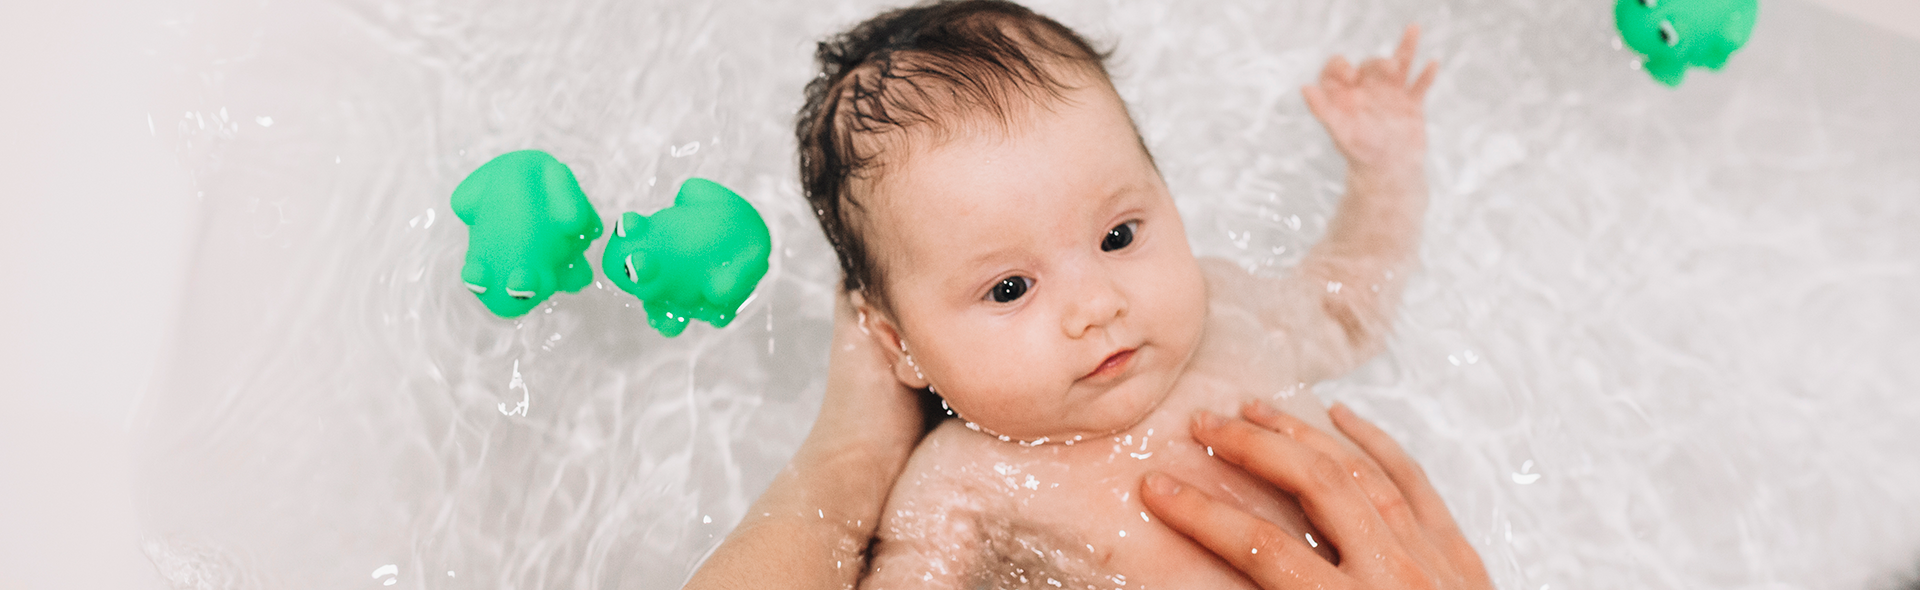 ¿Cómo bañar a tu bebé?